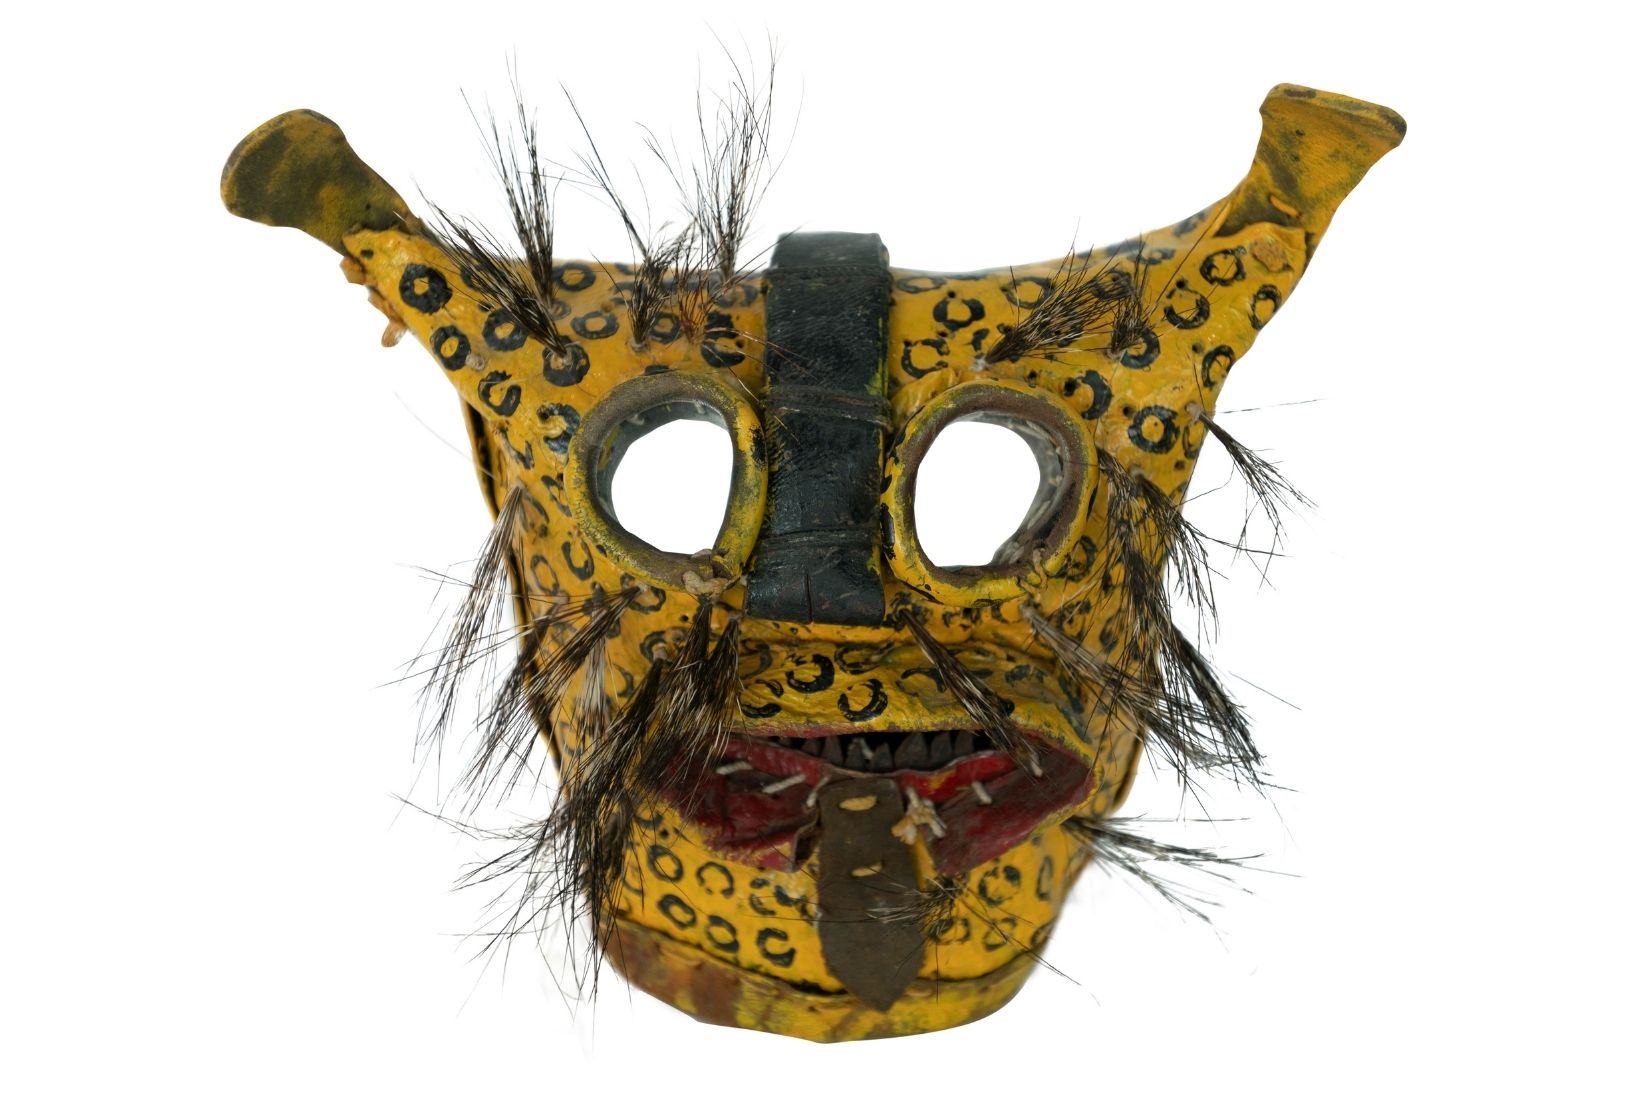 Máscara de jaguar en cuero policromado, recortado y cosido. Artesano desconocido. Zitlala, Guerrero. Col. Amparo Espinosa Rugarcía donada a AmigosMAP. (Foto: Estudio Kristina Velfu, EKV).